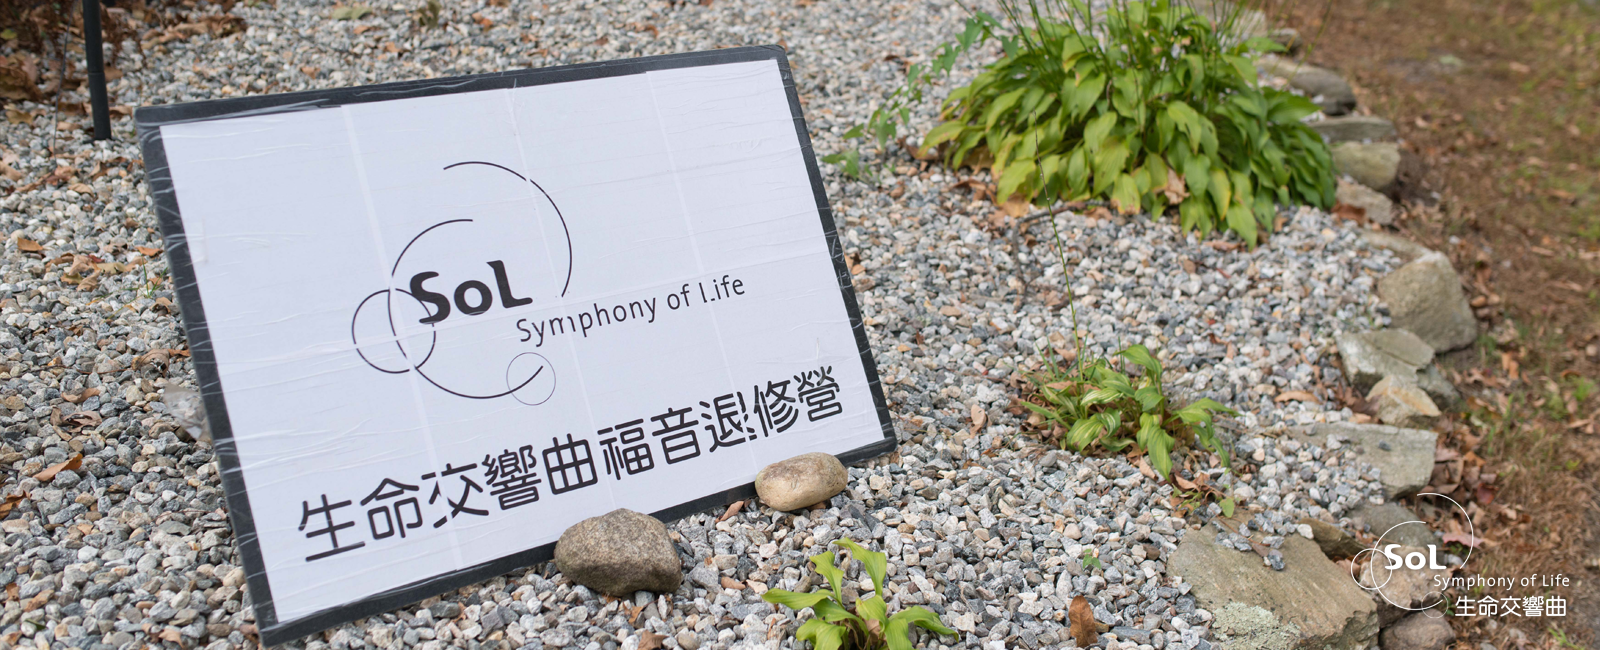 Symphony Of Life (SOL)